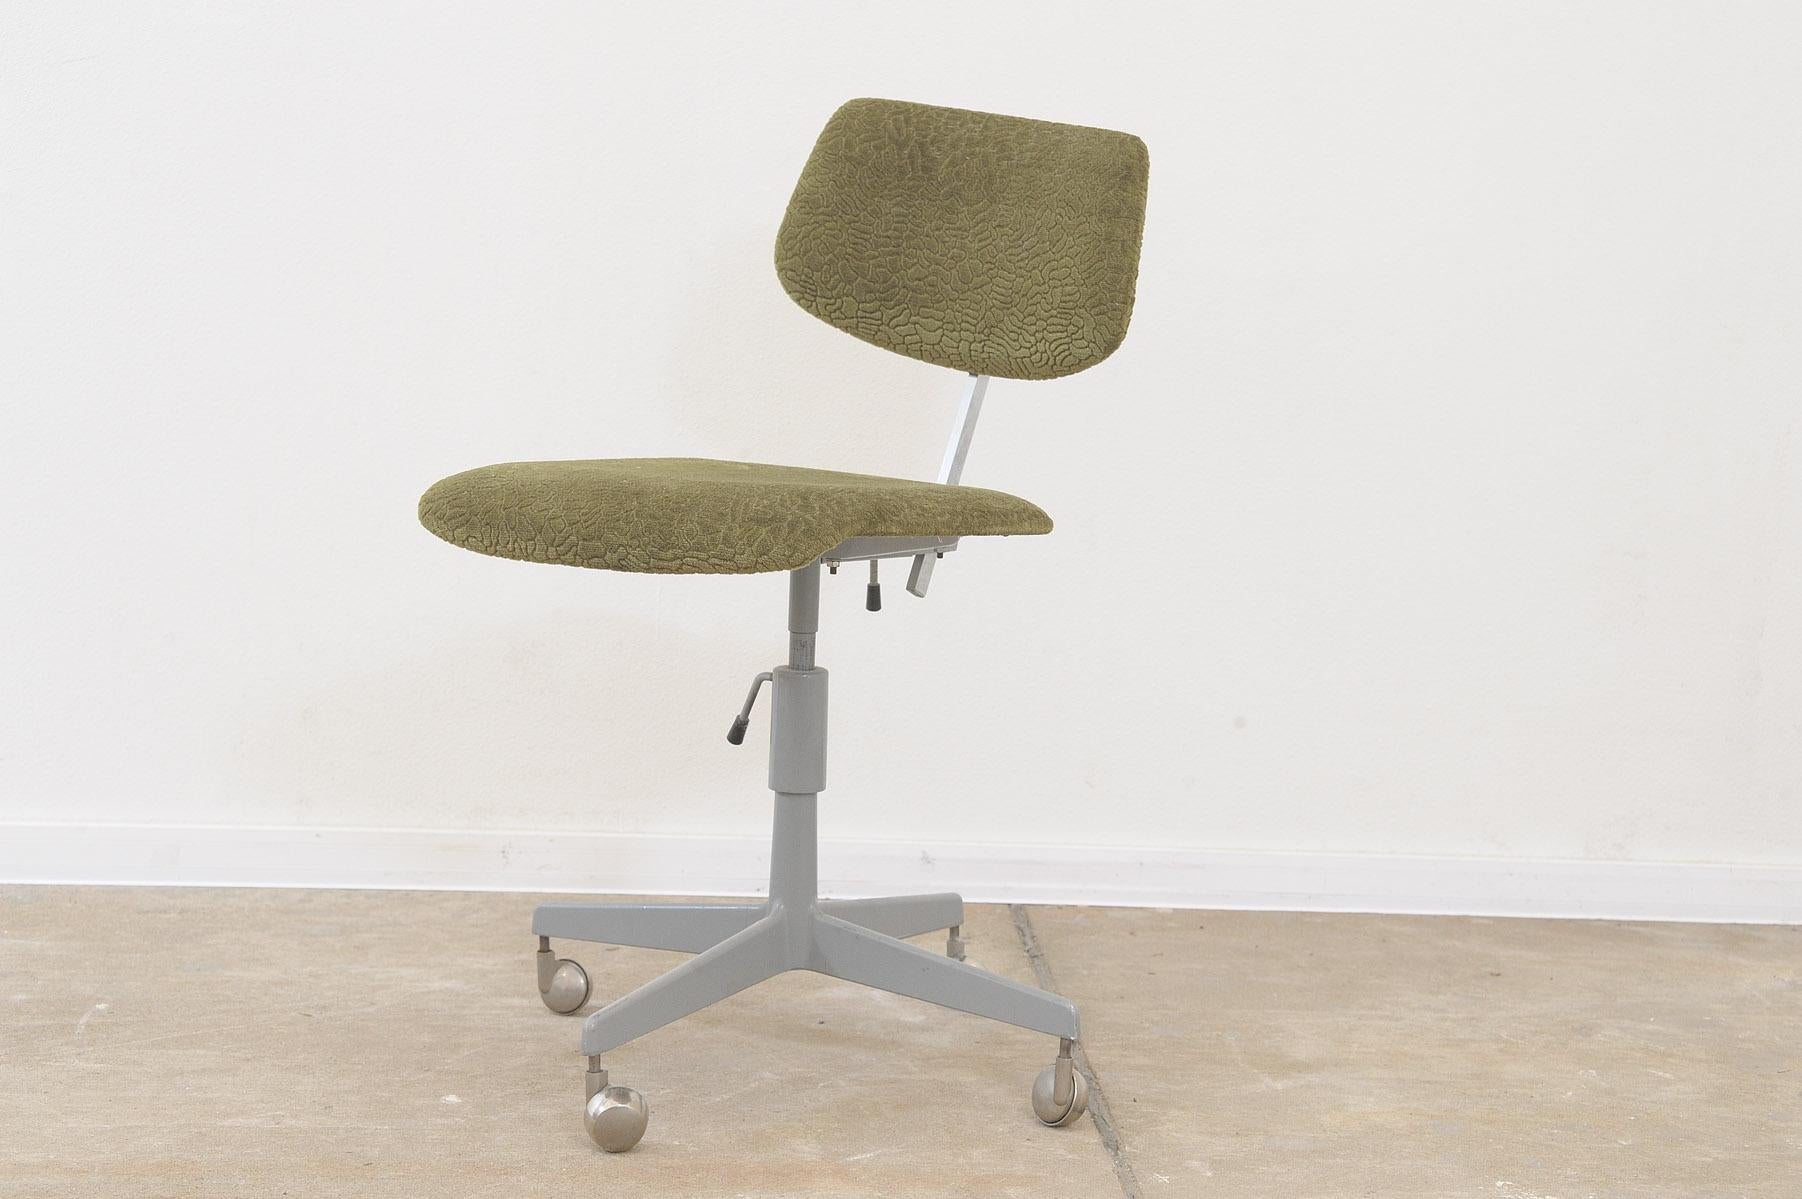 Cette chaise de bureau industrielle du milieu du siècle a été fabriquée par la société Kovona dans les années 1950.

Entièrement fonctionnel, réglable, pivotant. Fabriqué en plastique, en tissu et en fer.

En bon état Vintage, montrant de légers